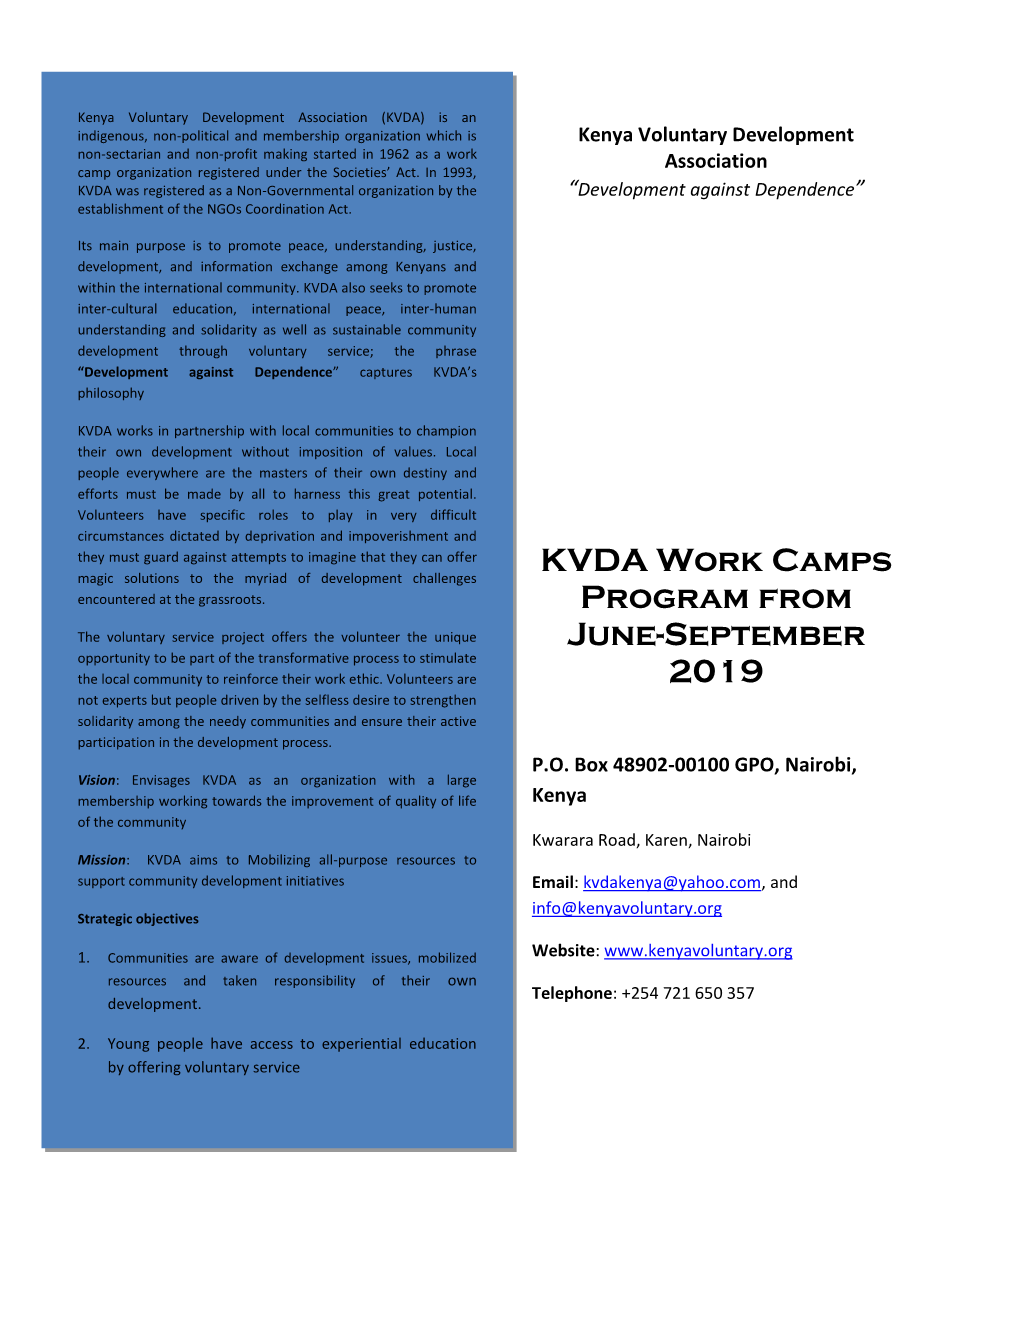 KVDA Work Camps Program from June-September 2019